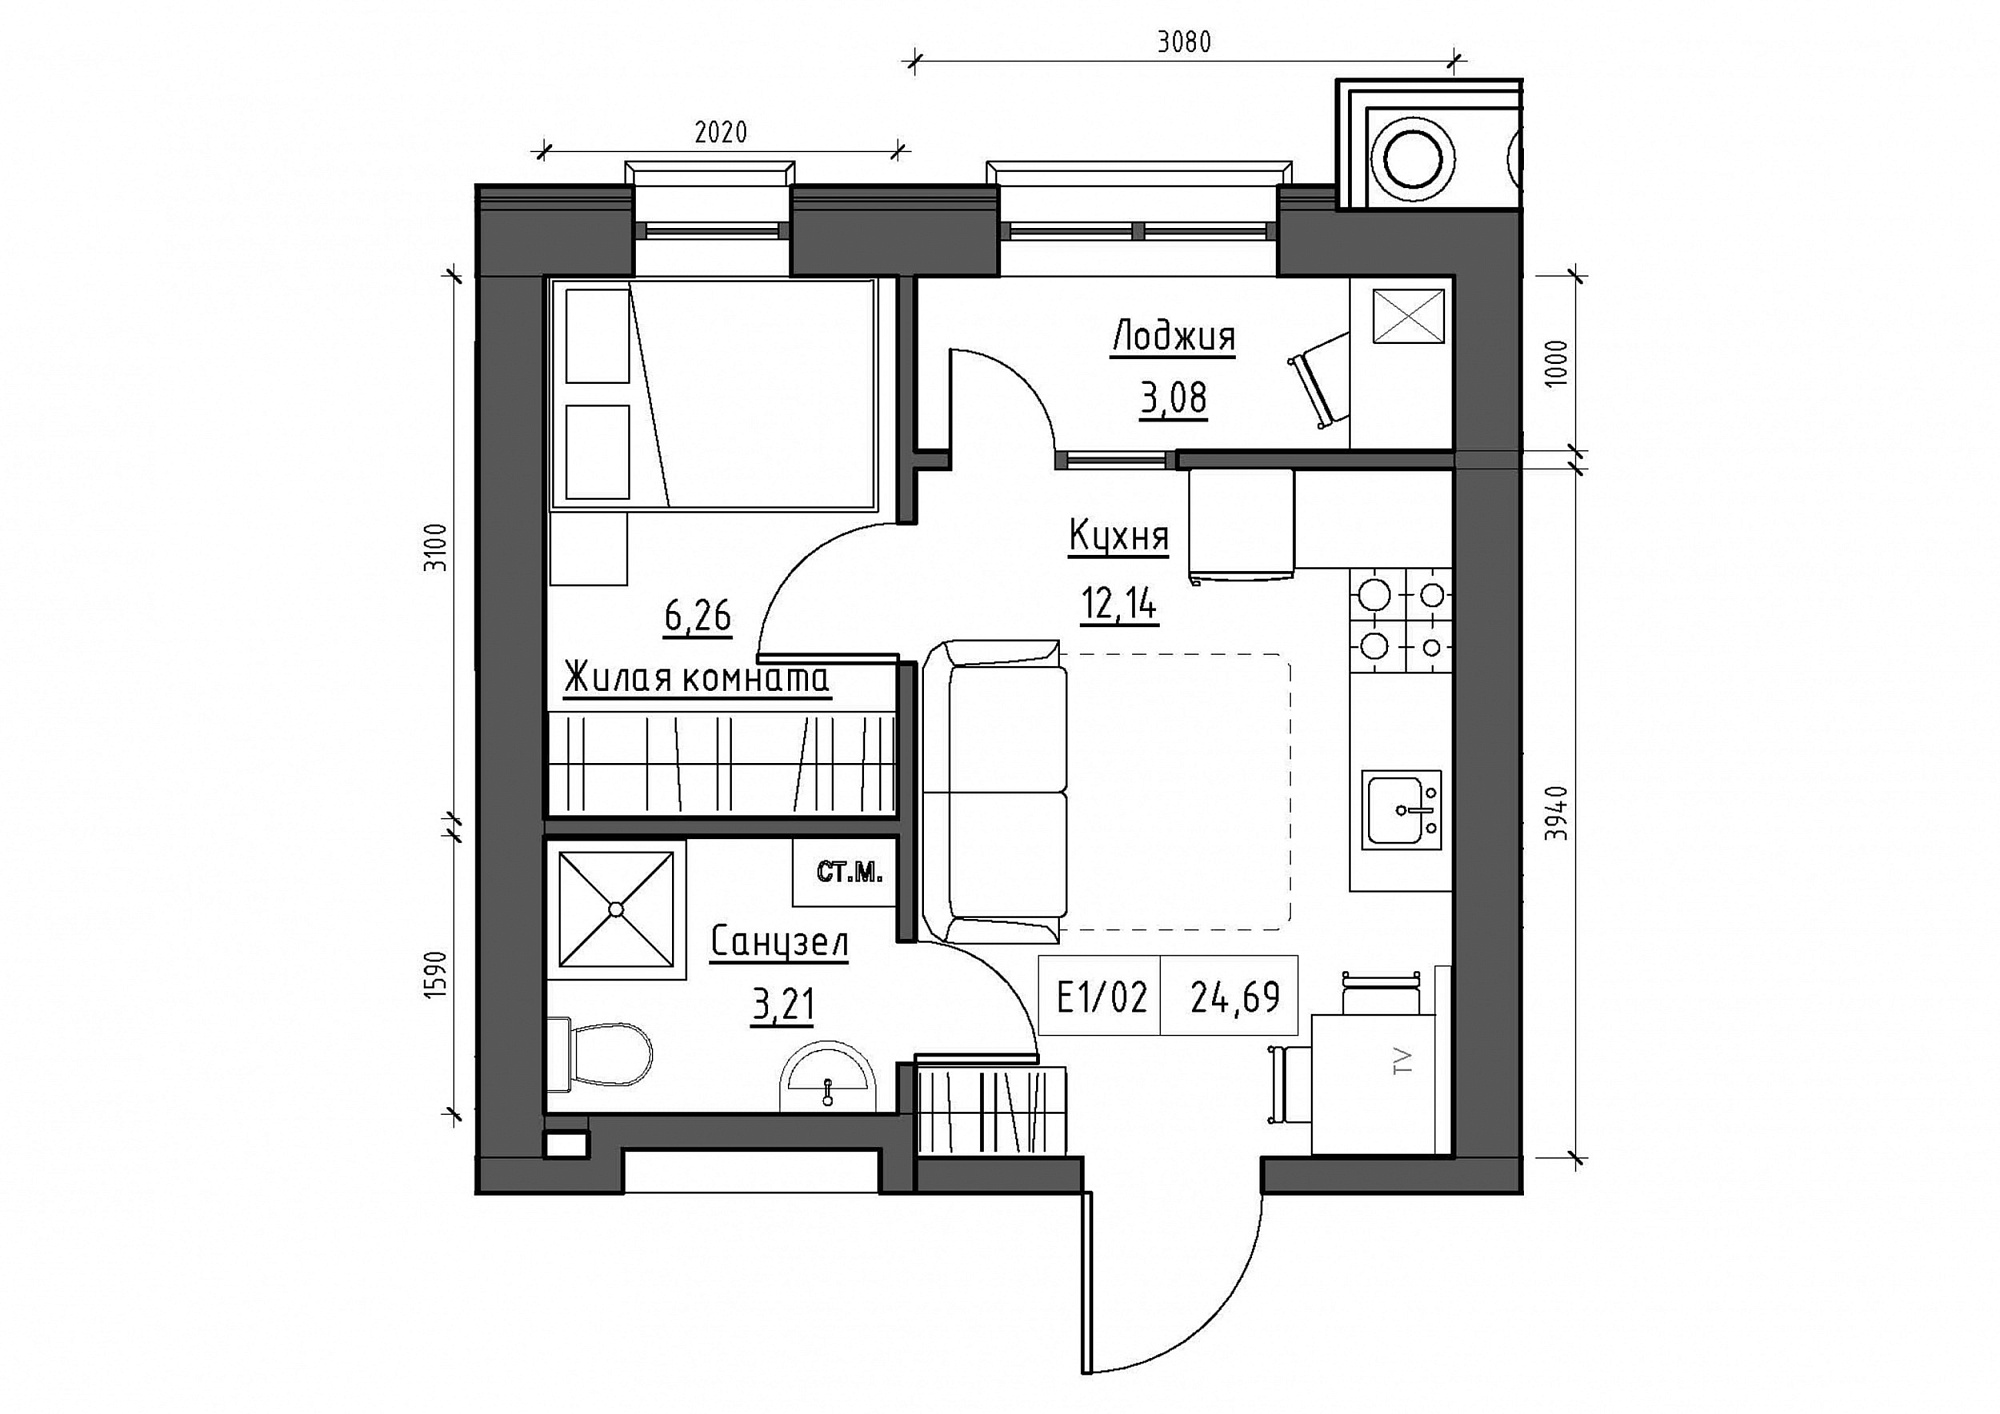 Планировка 1-к квартира площей 24.69м2, KS-011-05/0017.